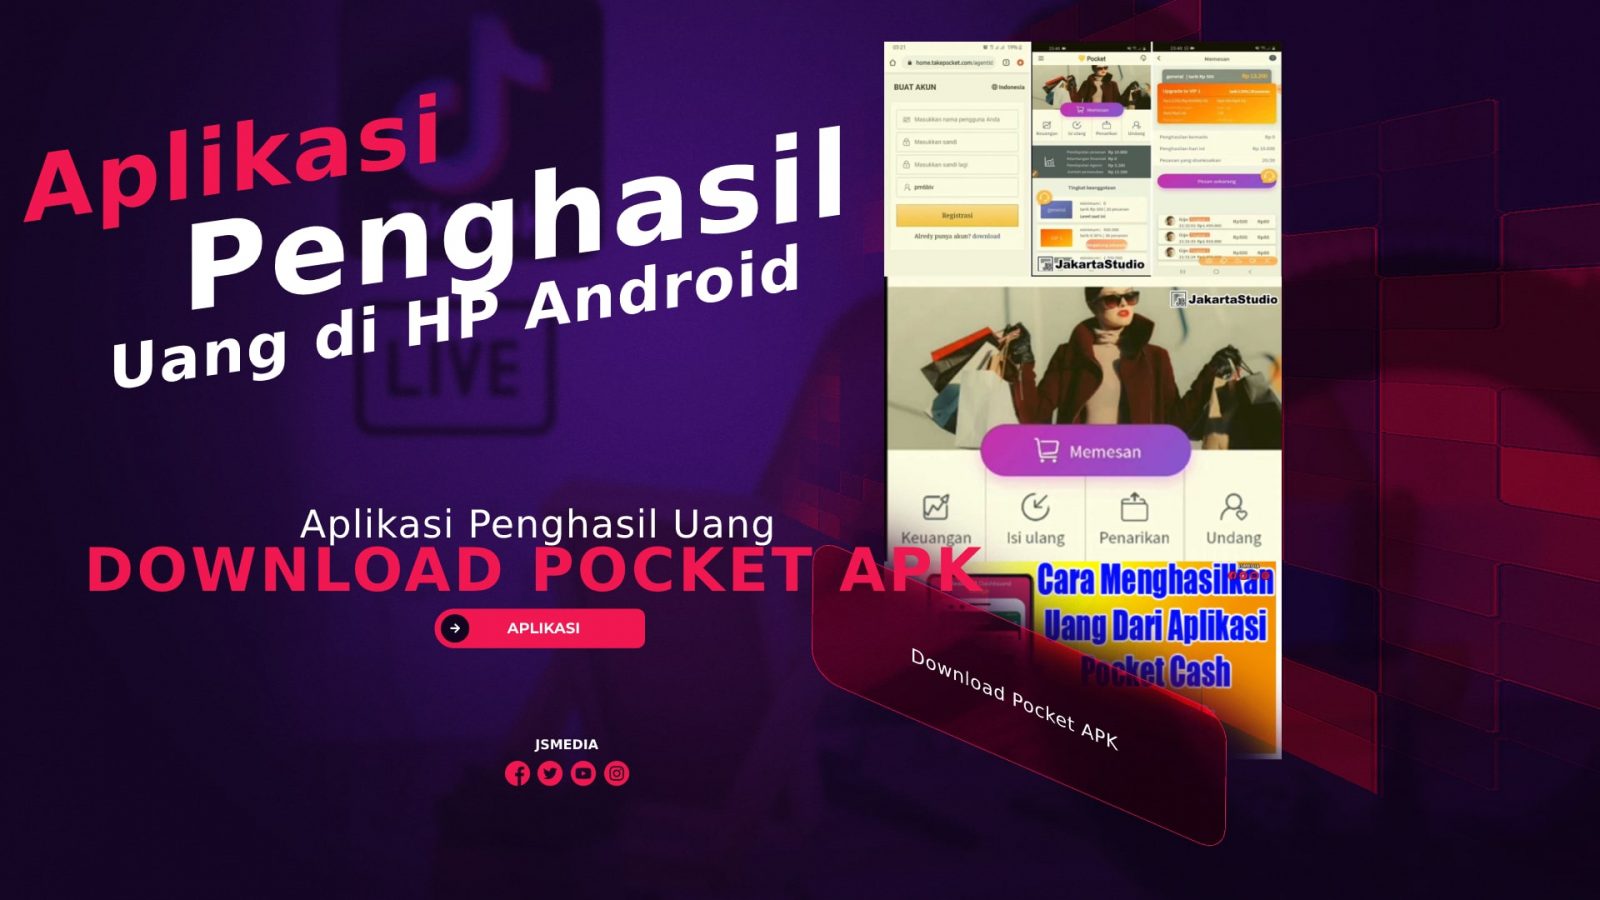 Download Pocket APK, Aplikasi Penghasil Uang di HP Android